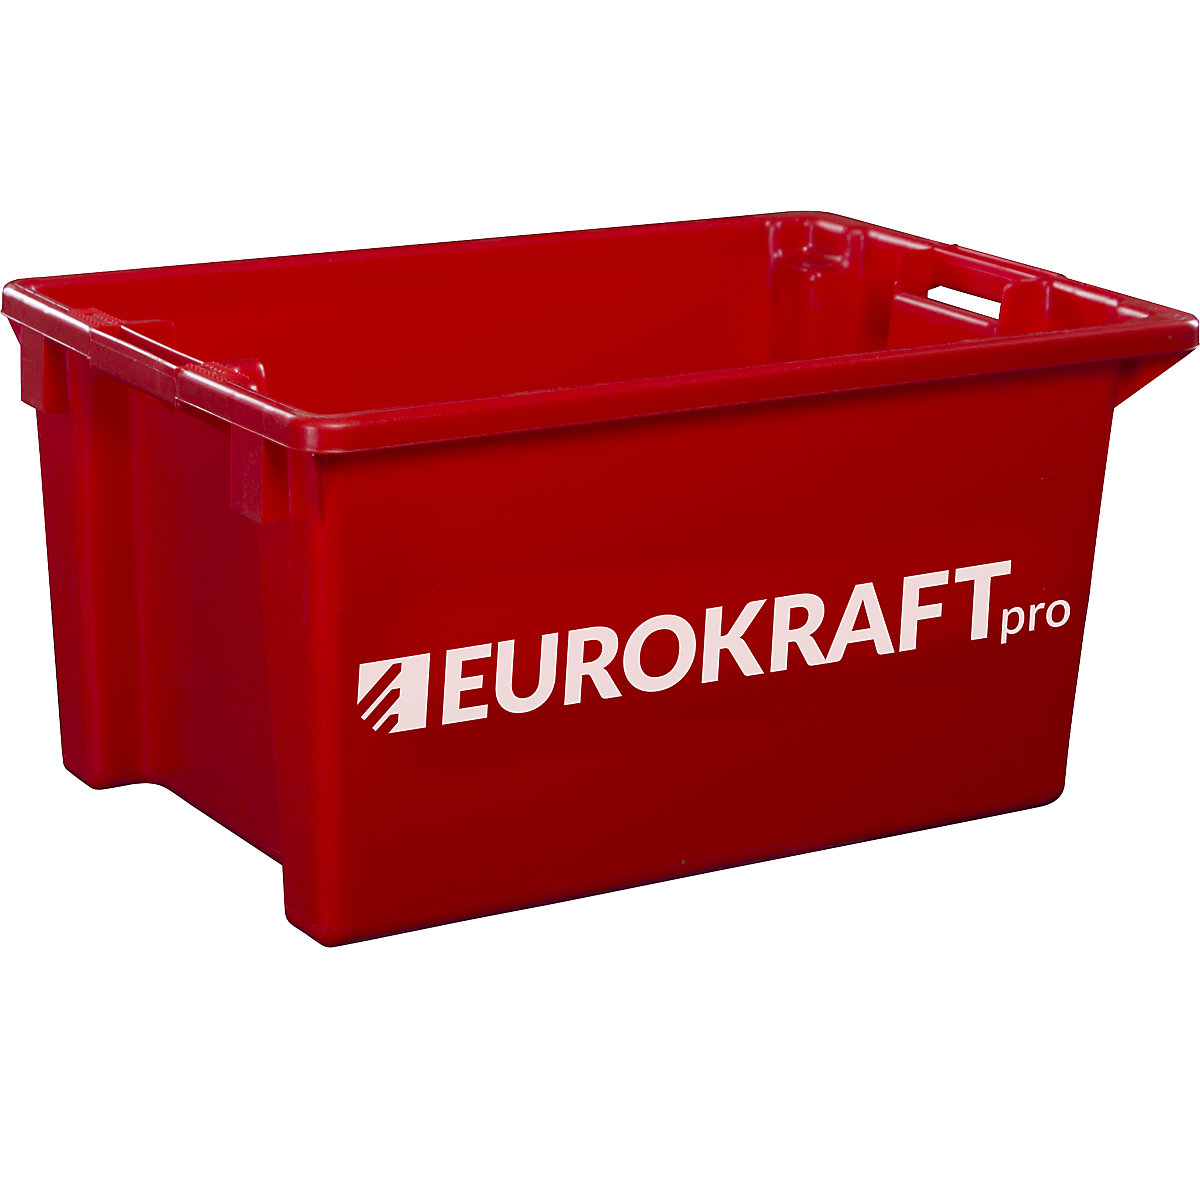 EUROKRAFTpro Drehstapelbehälter aus lebensmittelechtem Polypropylen, Inhalt 70 Liter, VE 2 Stk, Wände und Boden geschlossen, rot